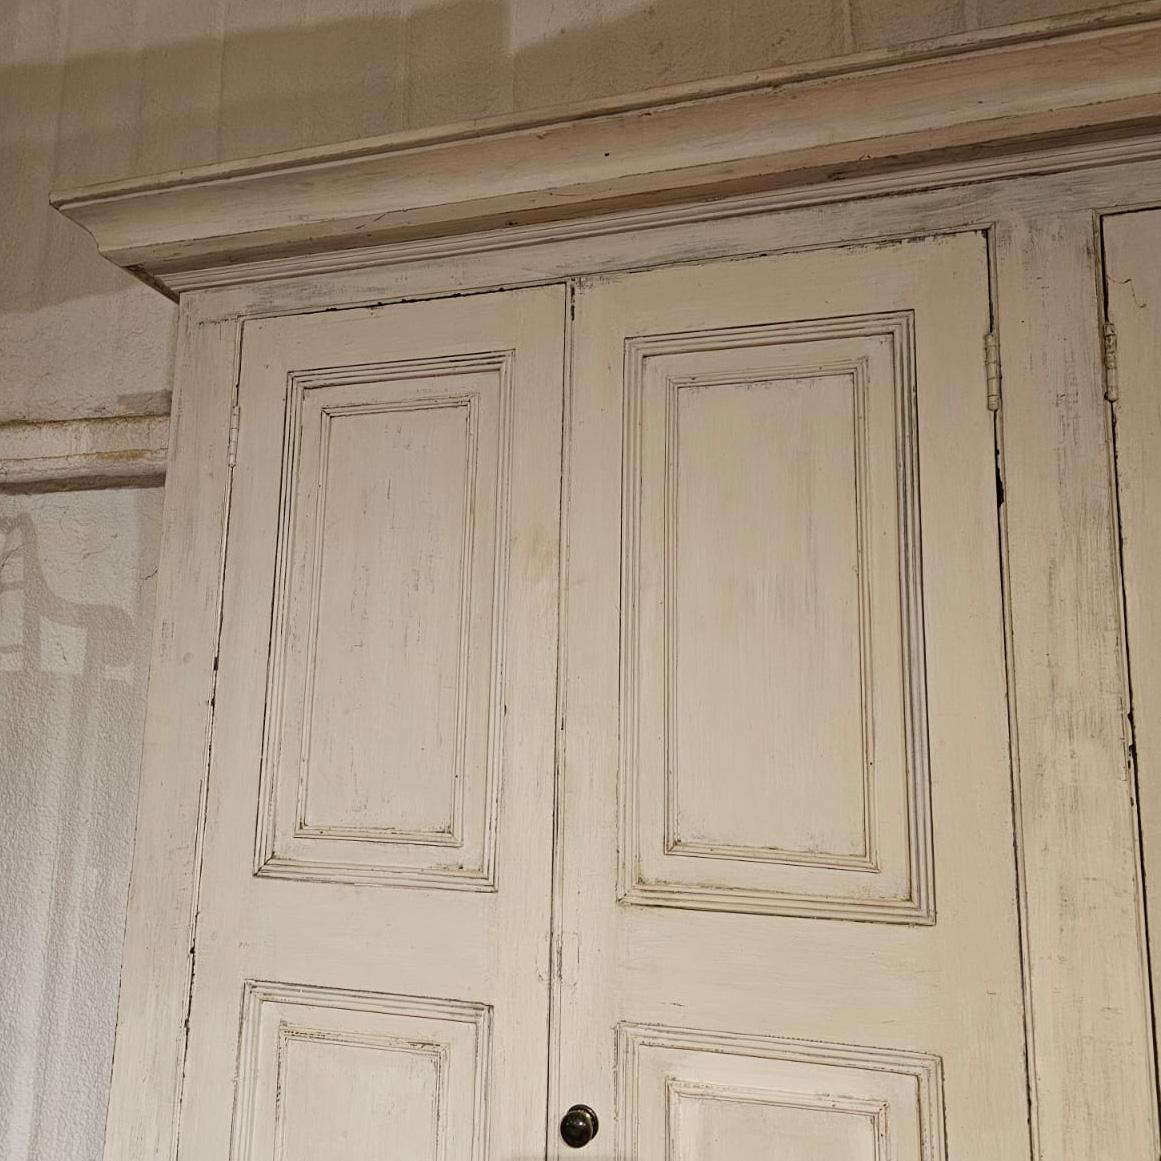 Großer englischer Schrank aus bemalter Kiefer aus dem frühen 19. Jahrhundert von einem Anwesen in West Country. 1820.

Aktenzeichen: 8347

Abmessungen
129 Zoll (328 cm) Breite
21 Zoll (53 cm) tief
102,5 Zoll (260 cm) hoch